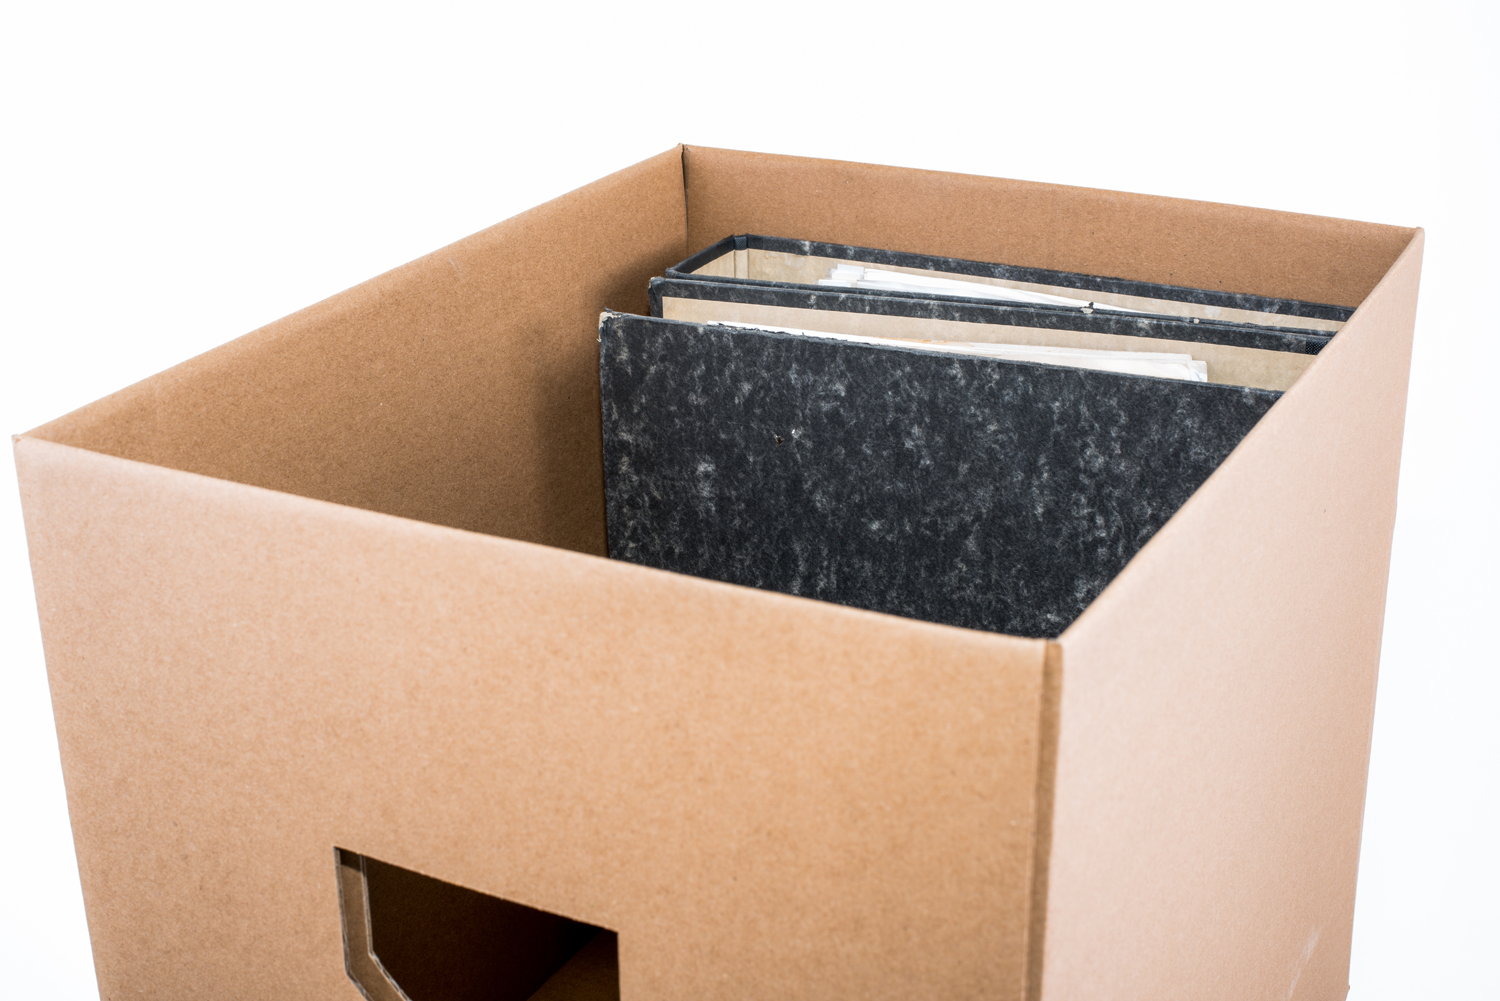 7EVEN Transport, Umzug, Stapel und z.b. mehr Box Karton vieles für und Ordner Aufbewahrungsbox Schallplatten, Aufbewahrungs